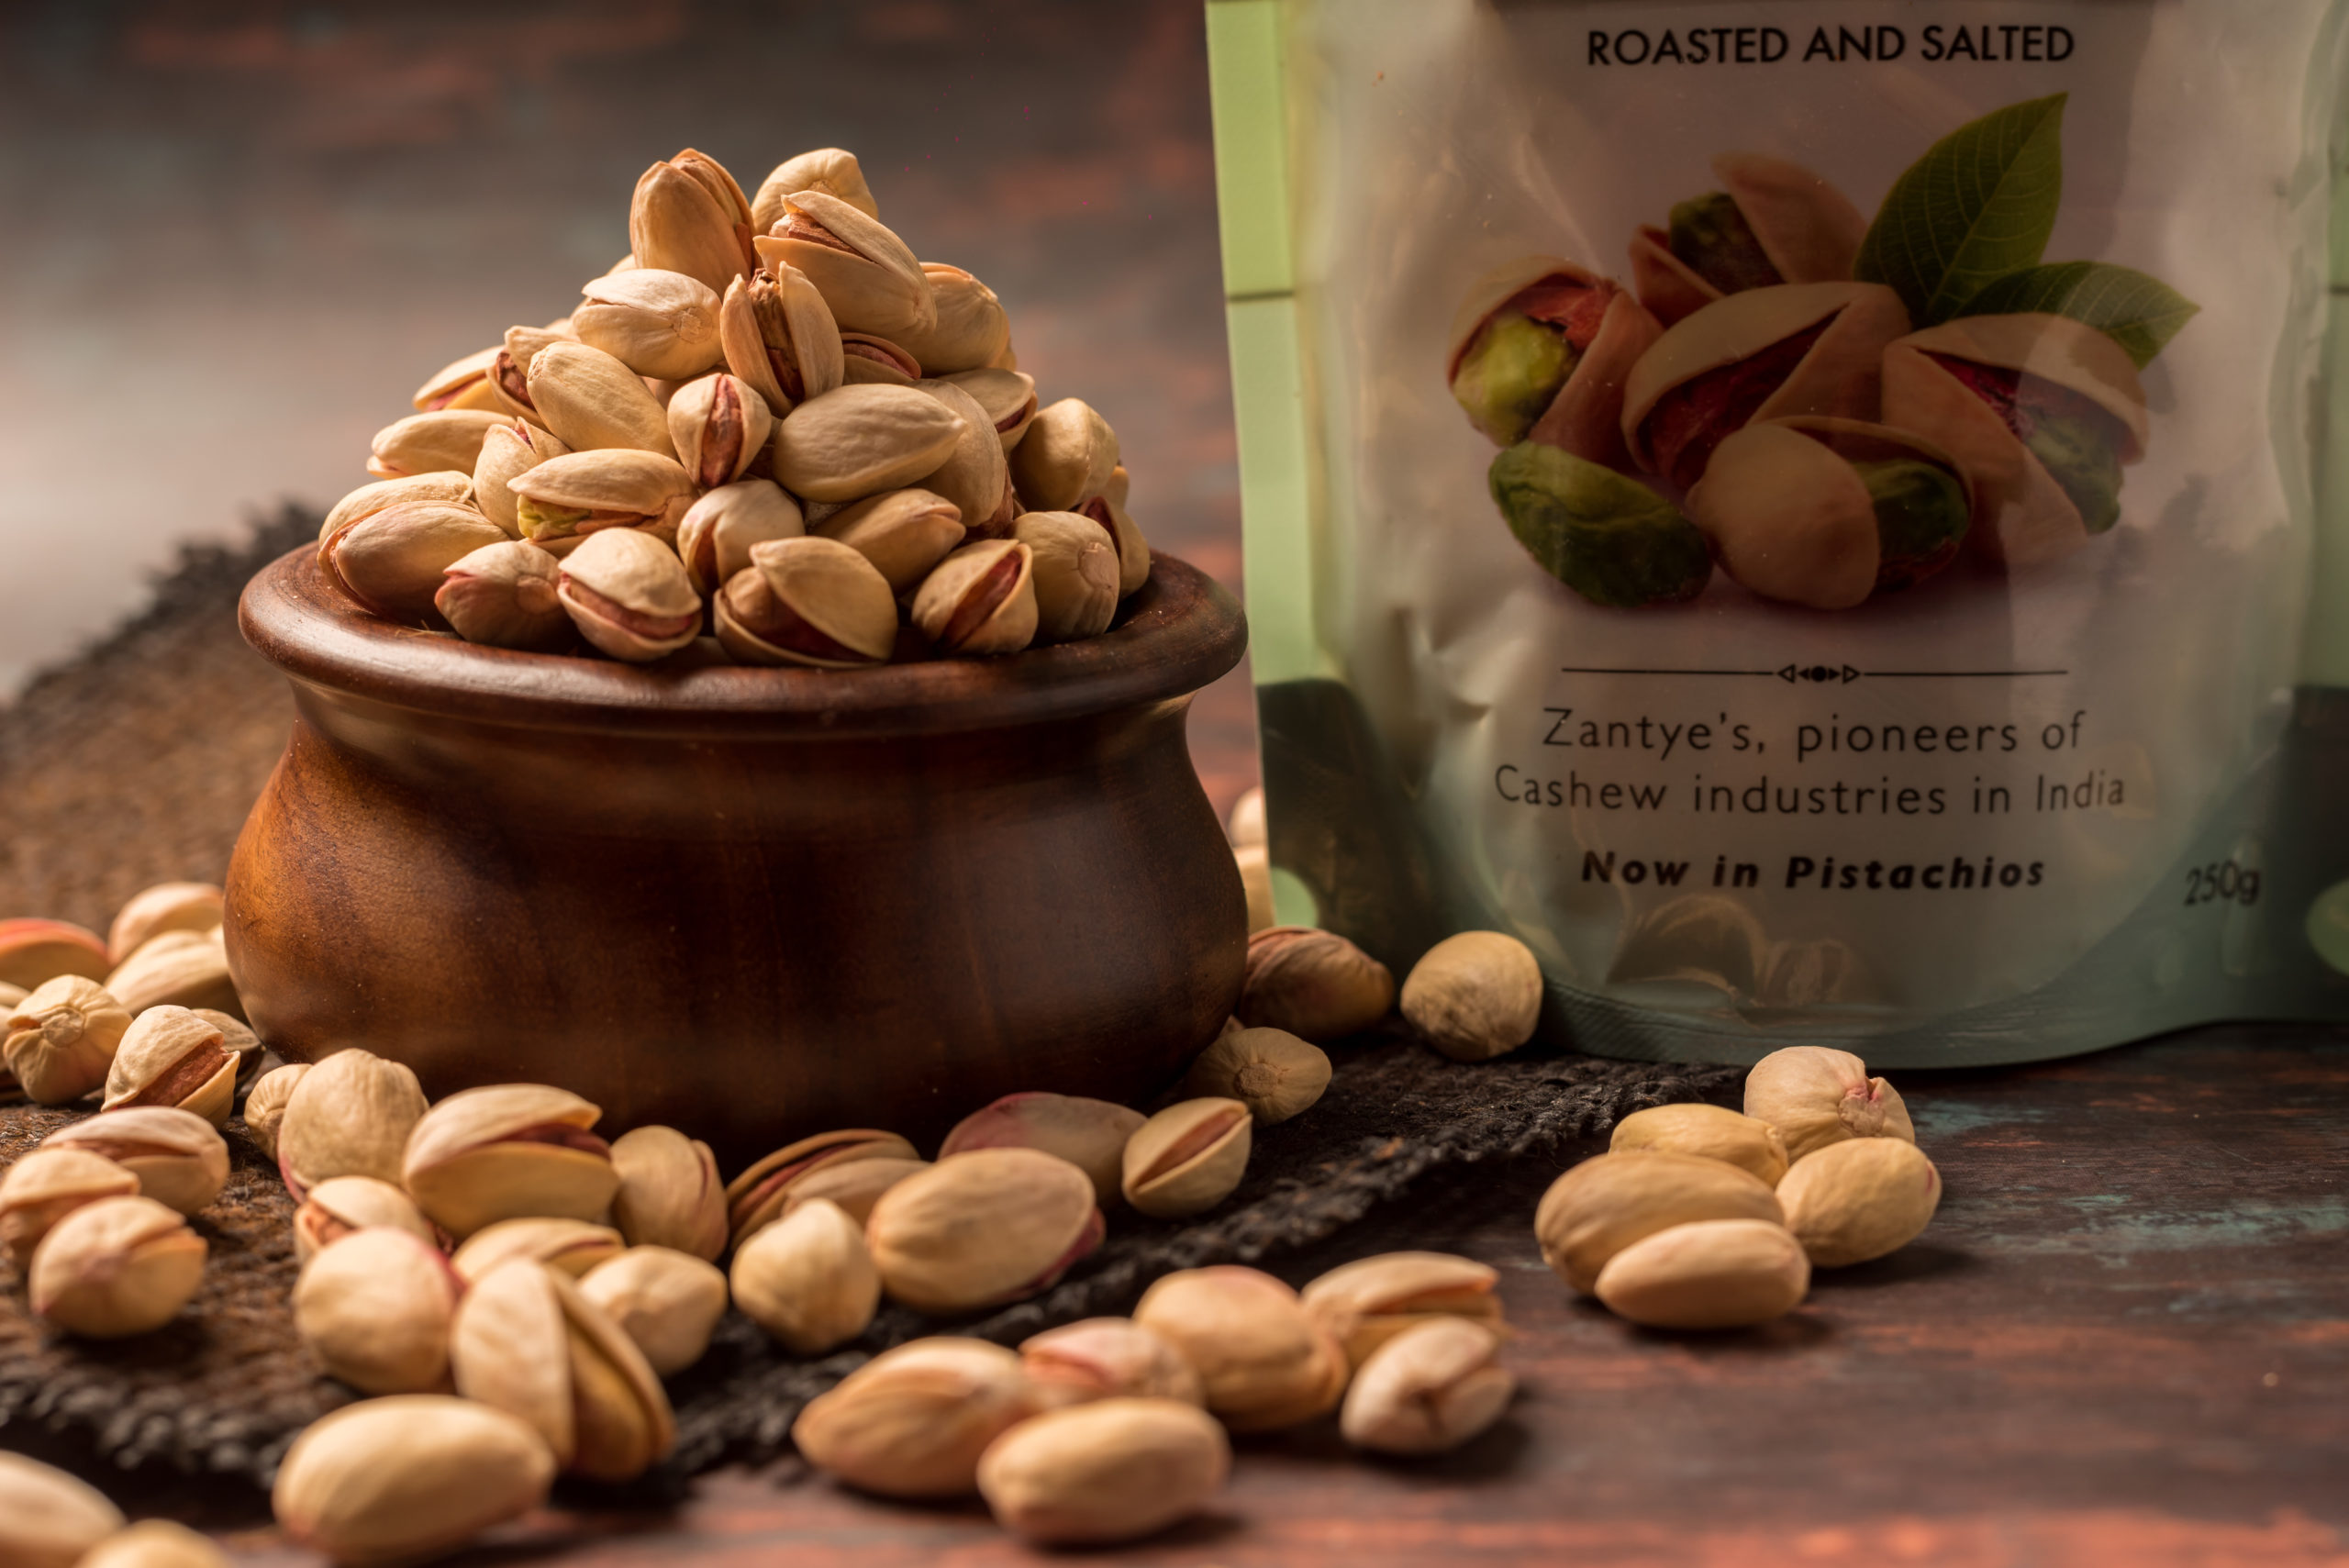 Pistachio milk, buy pistachios online, health benefits of nuts